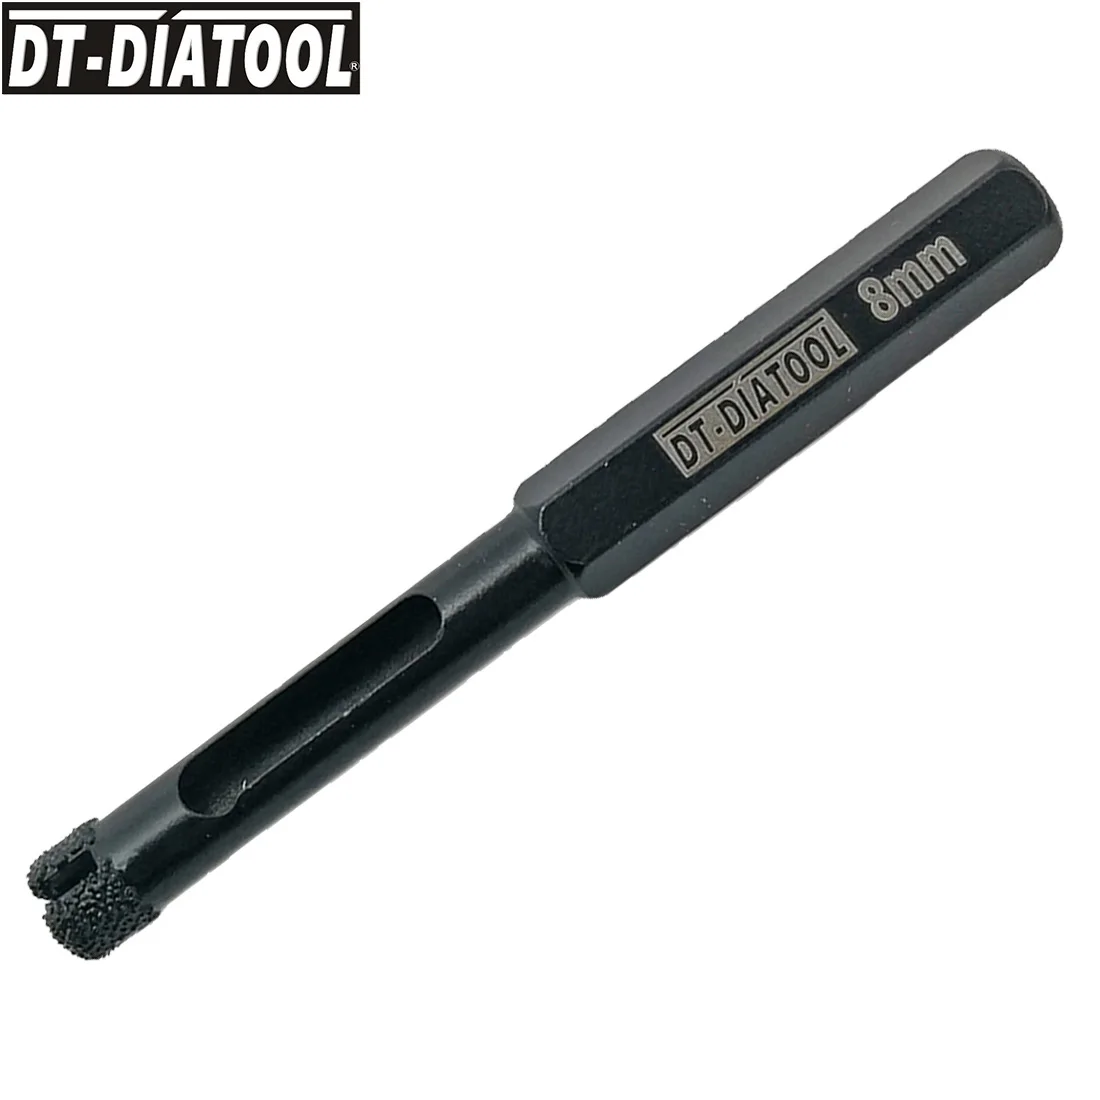 DT-DIATOOL 1 компл. Hex вакуумной пайки отверстие пилы Diamond буровые долота с пластик позиционер присоски 6 мм + 8 10 12 для мрамор